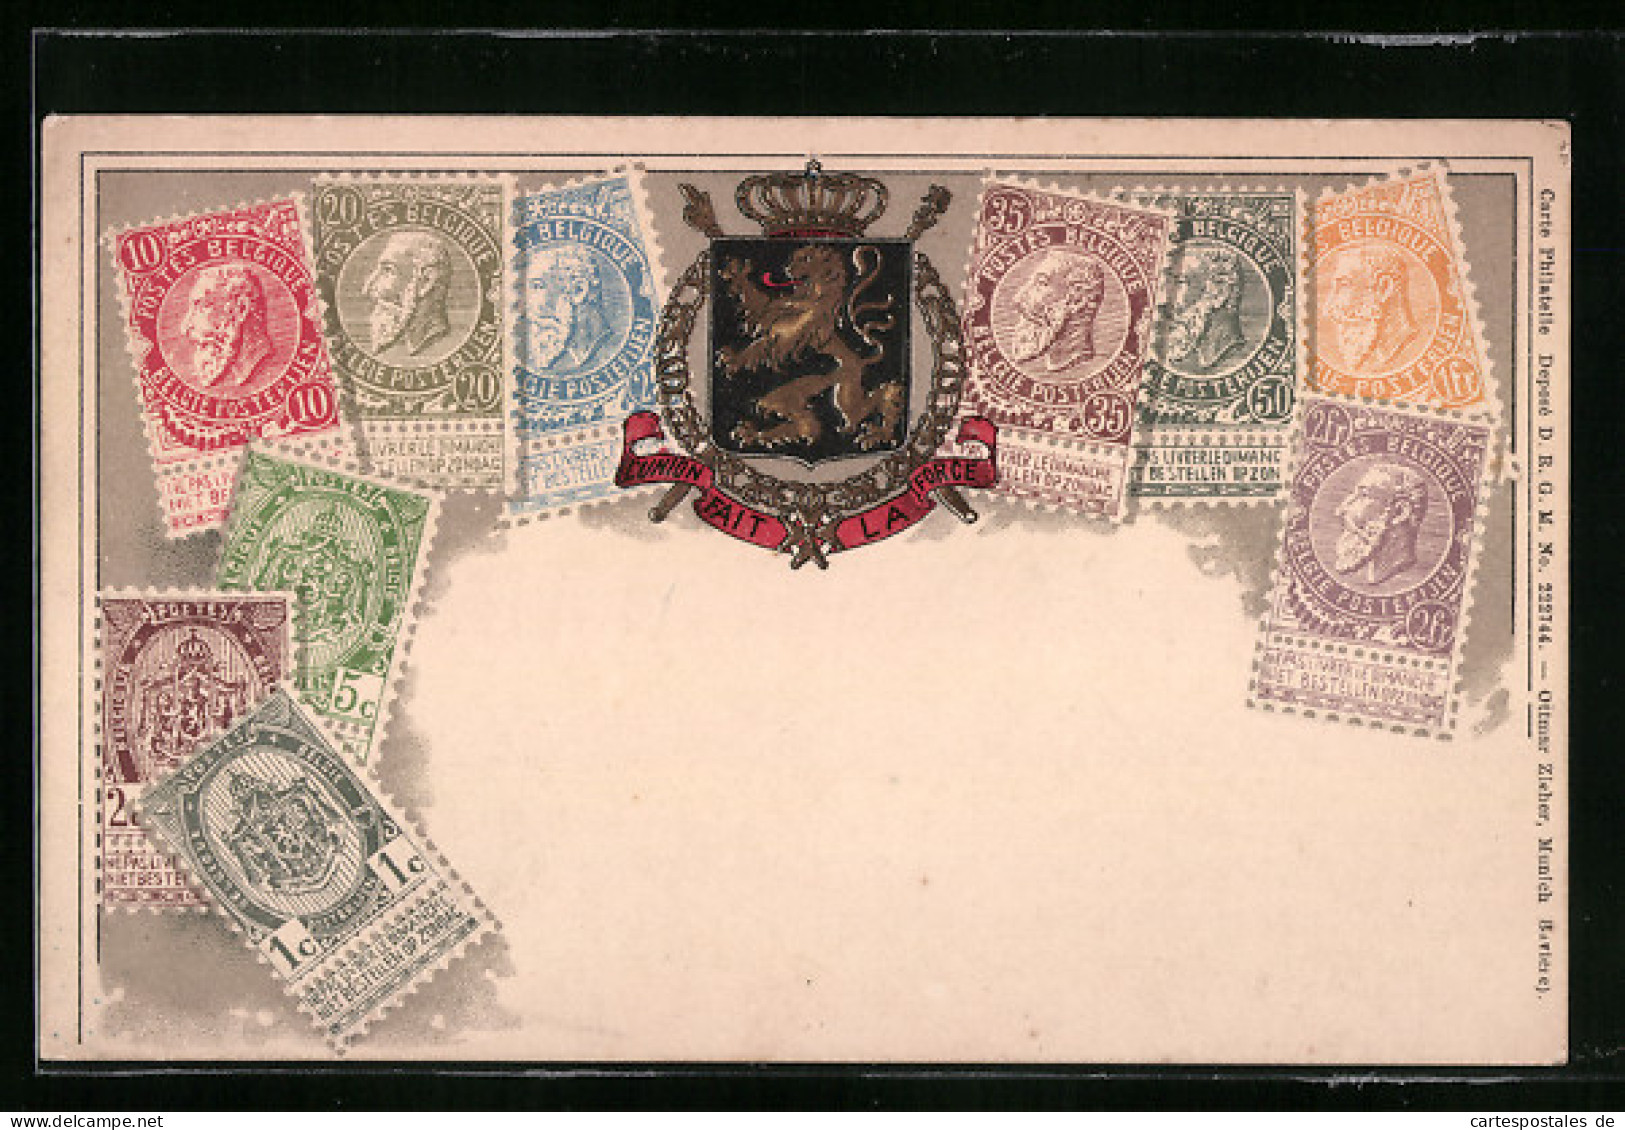 AK Briefmarken Aus Belgien  - Briefmarken (Abbildungen)